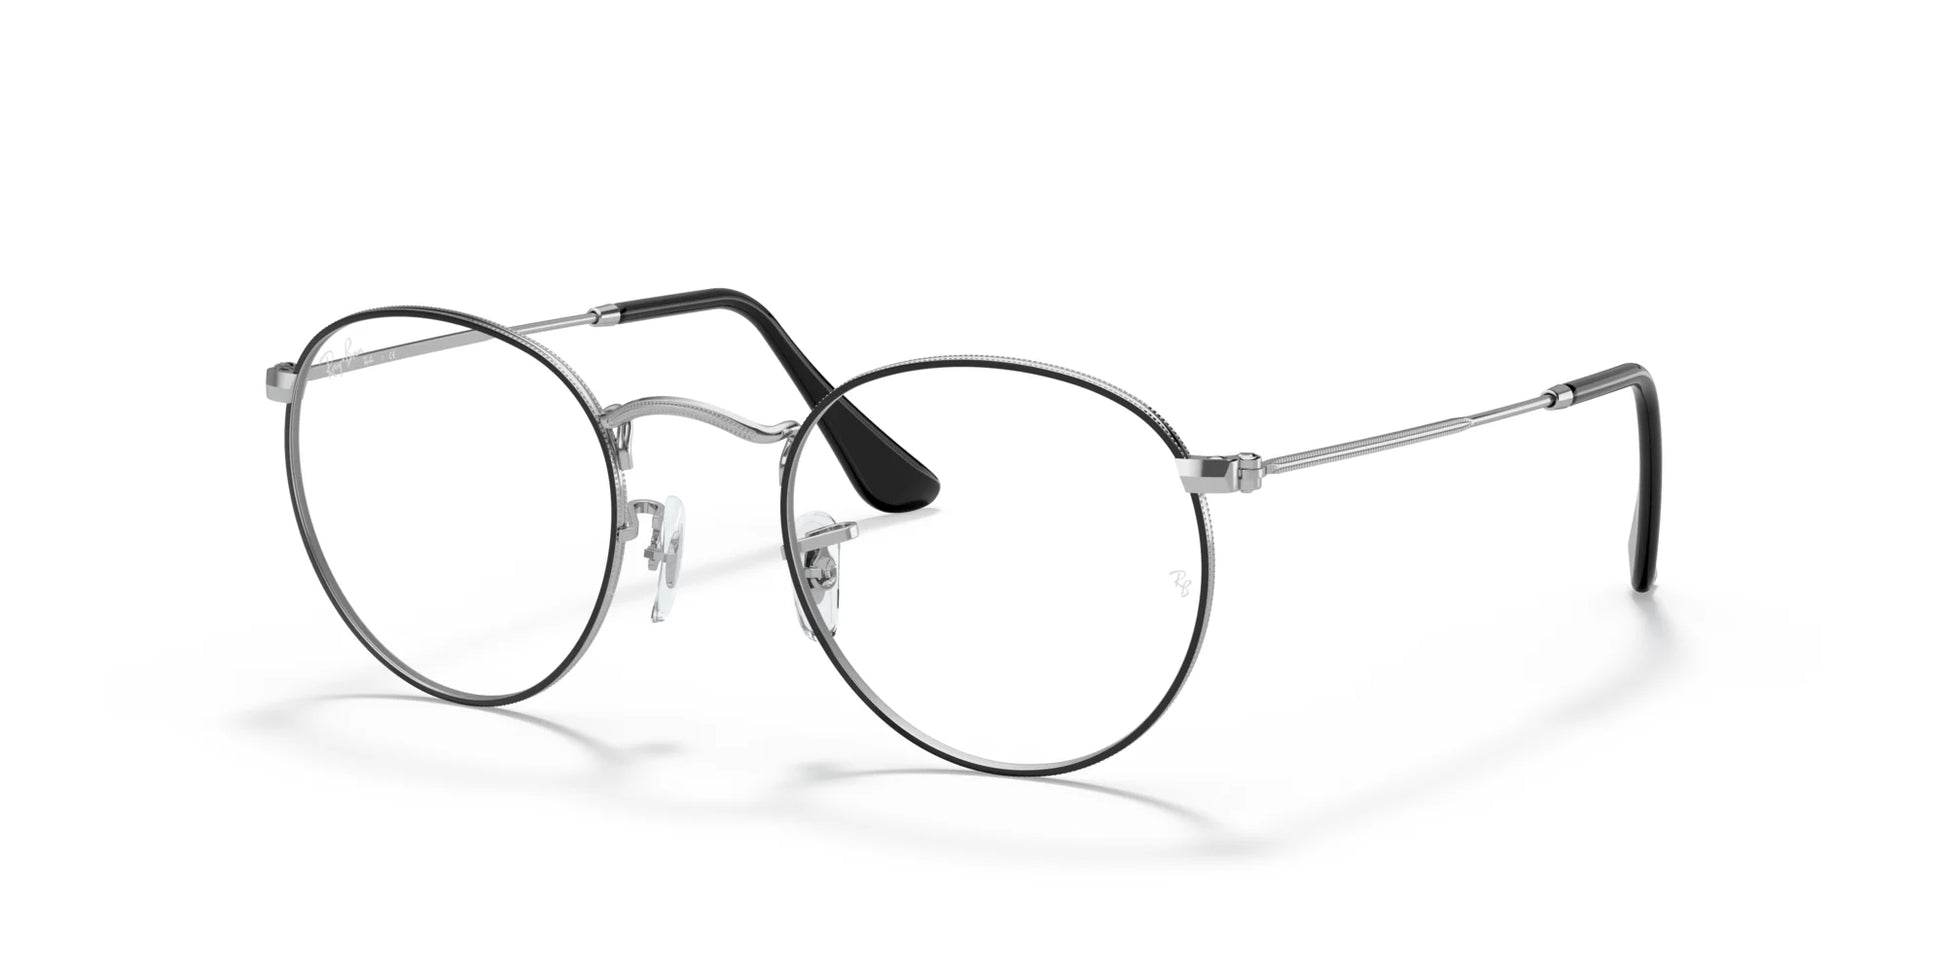 Ray-Ban ROUND METAL RX3447V Eyeglasses Black On Silver